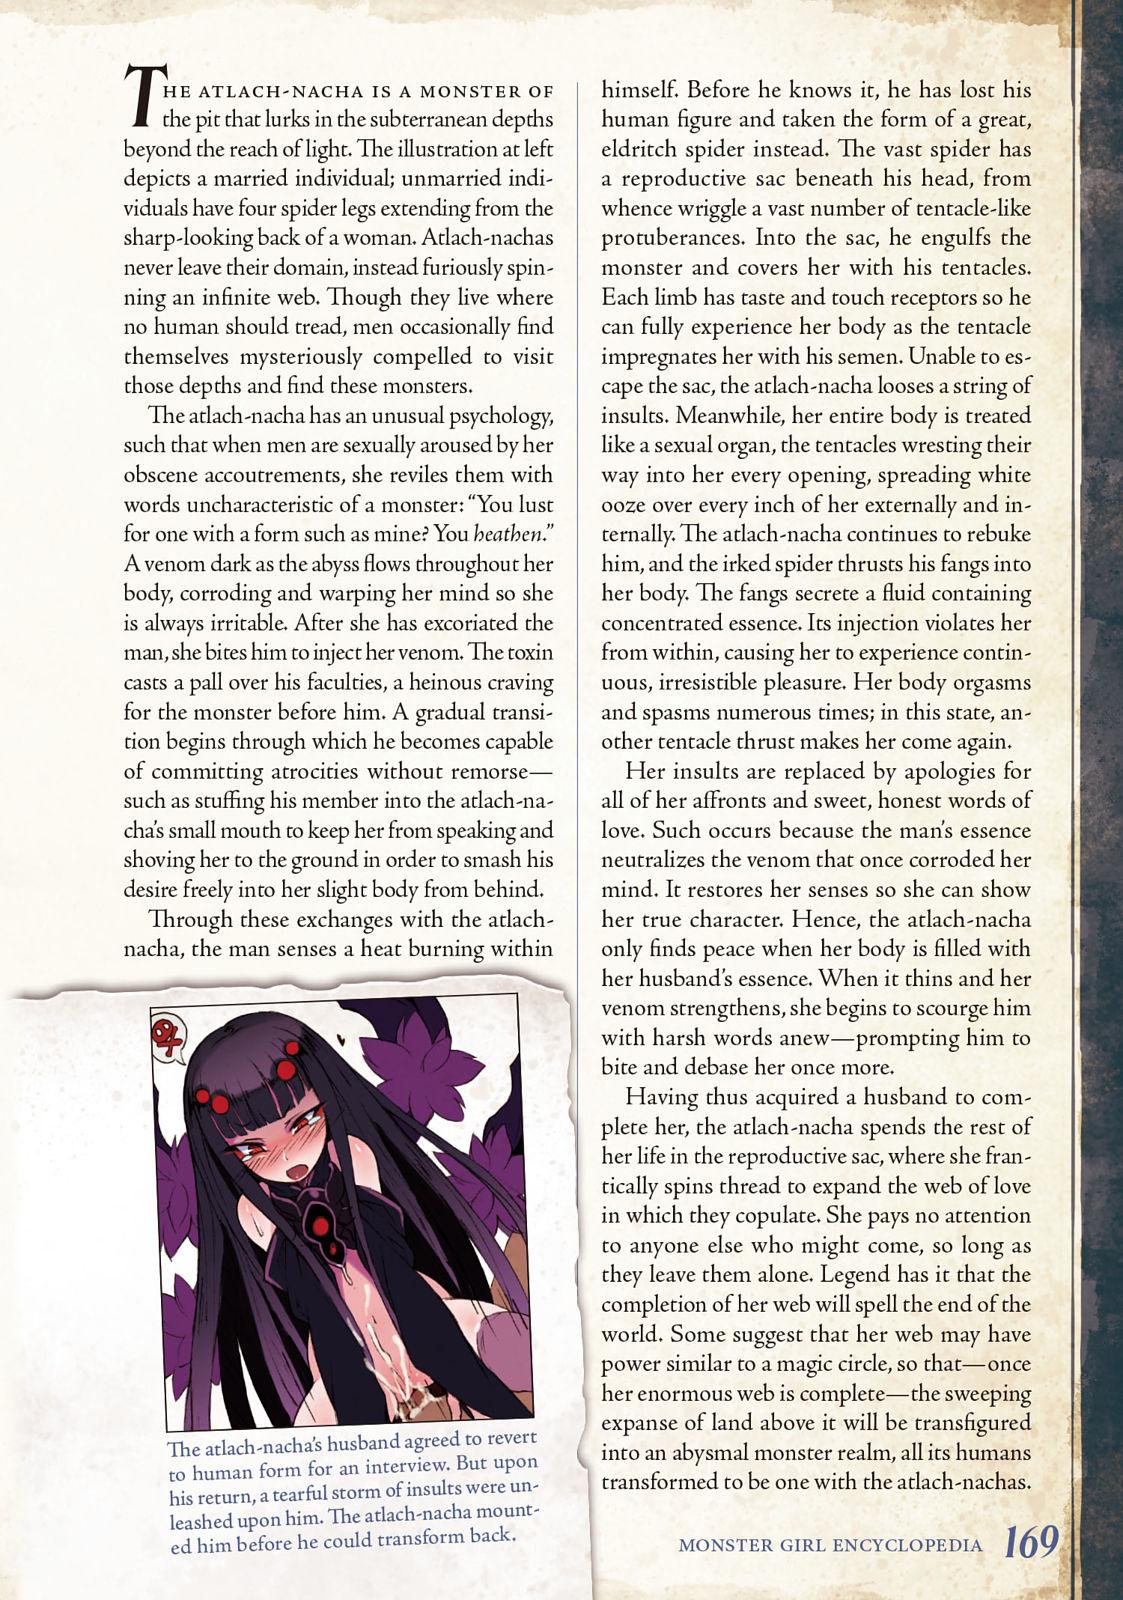 Monster Girl Encyclopedia Vol. 2 169